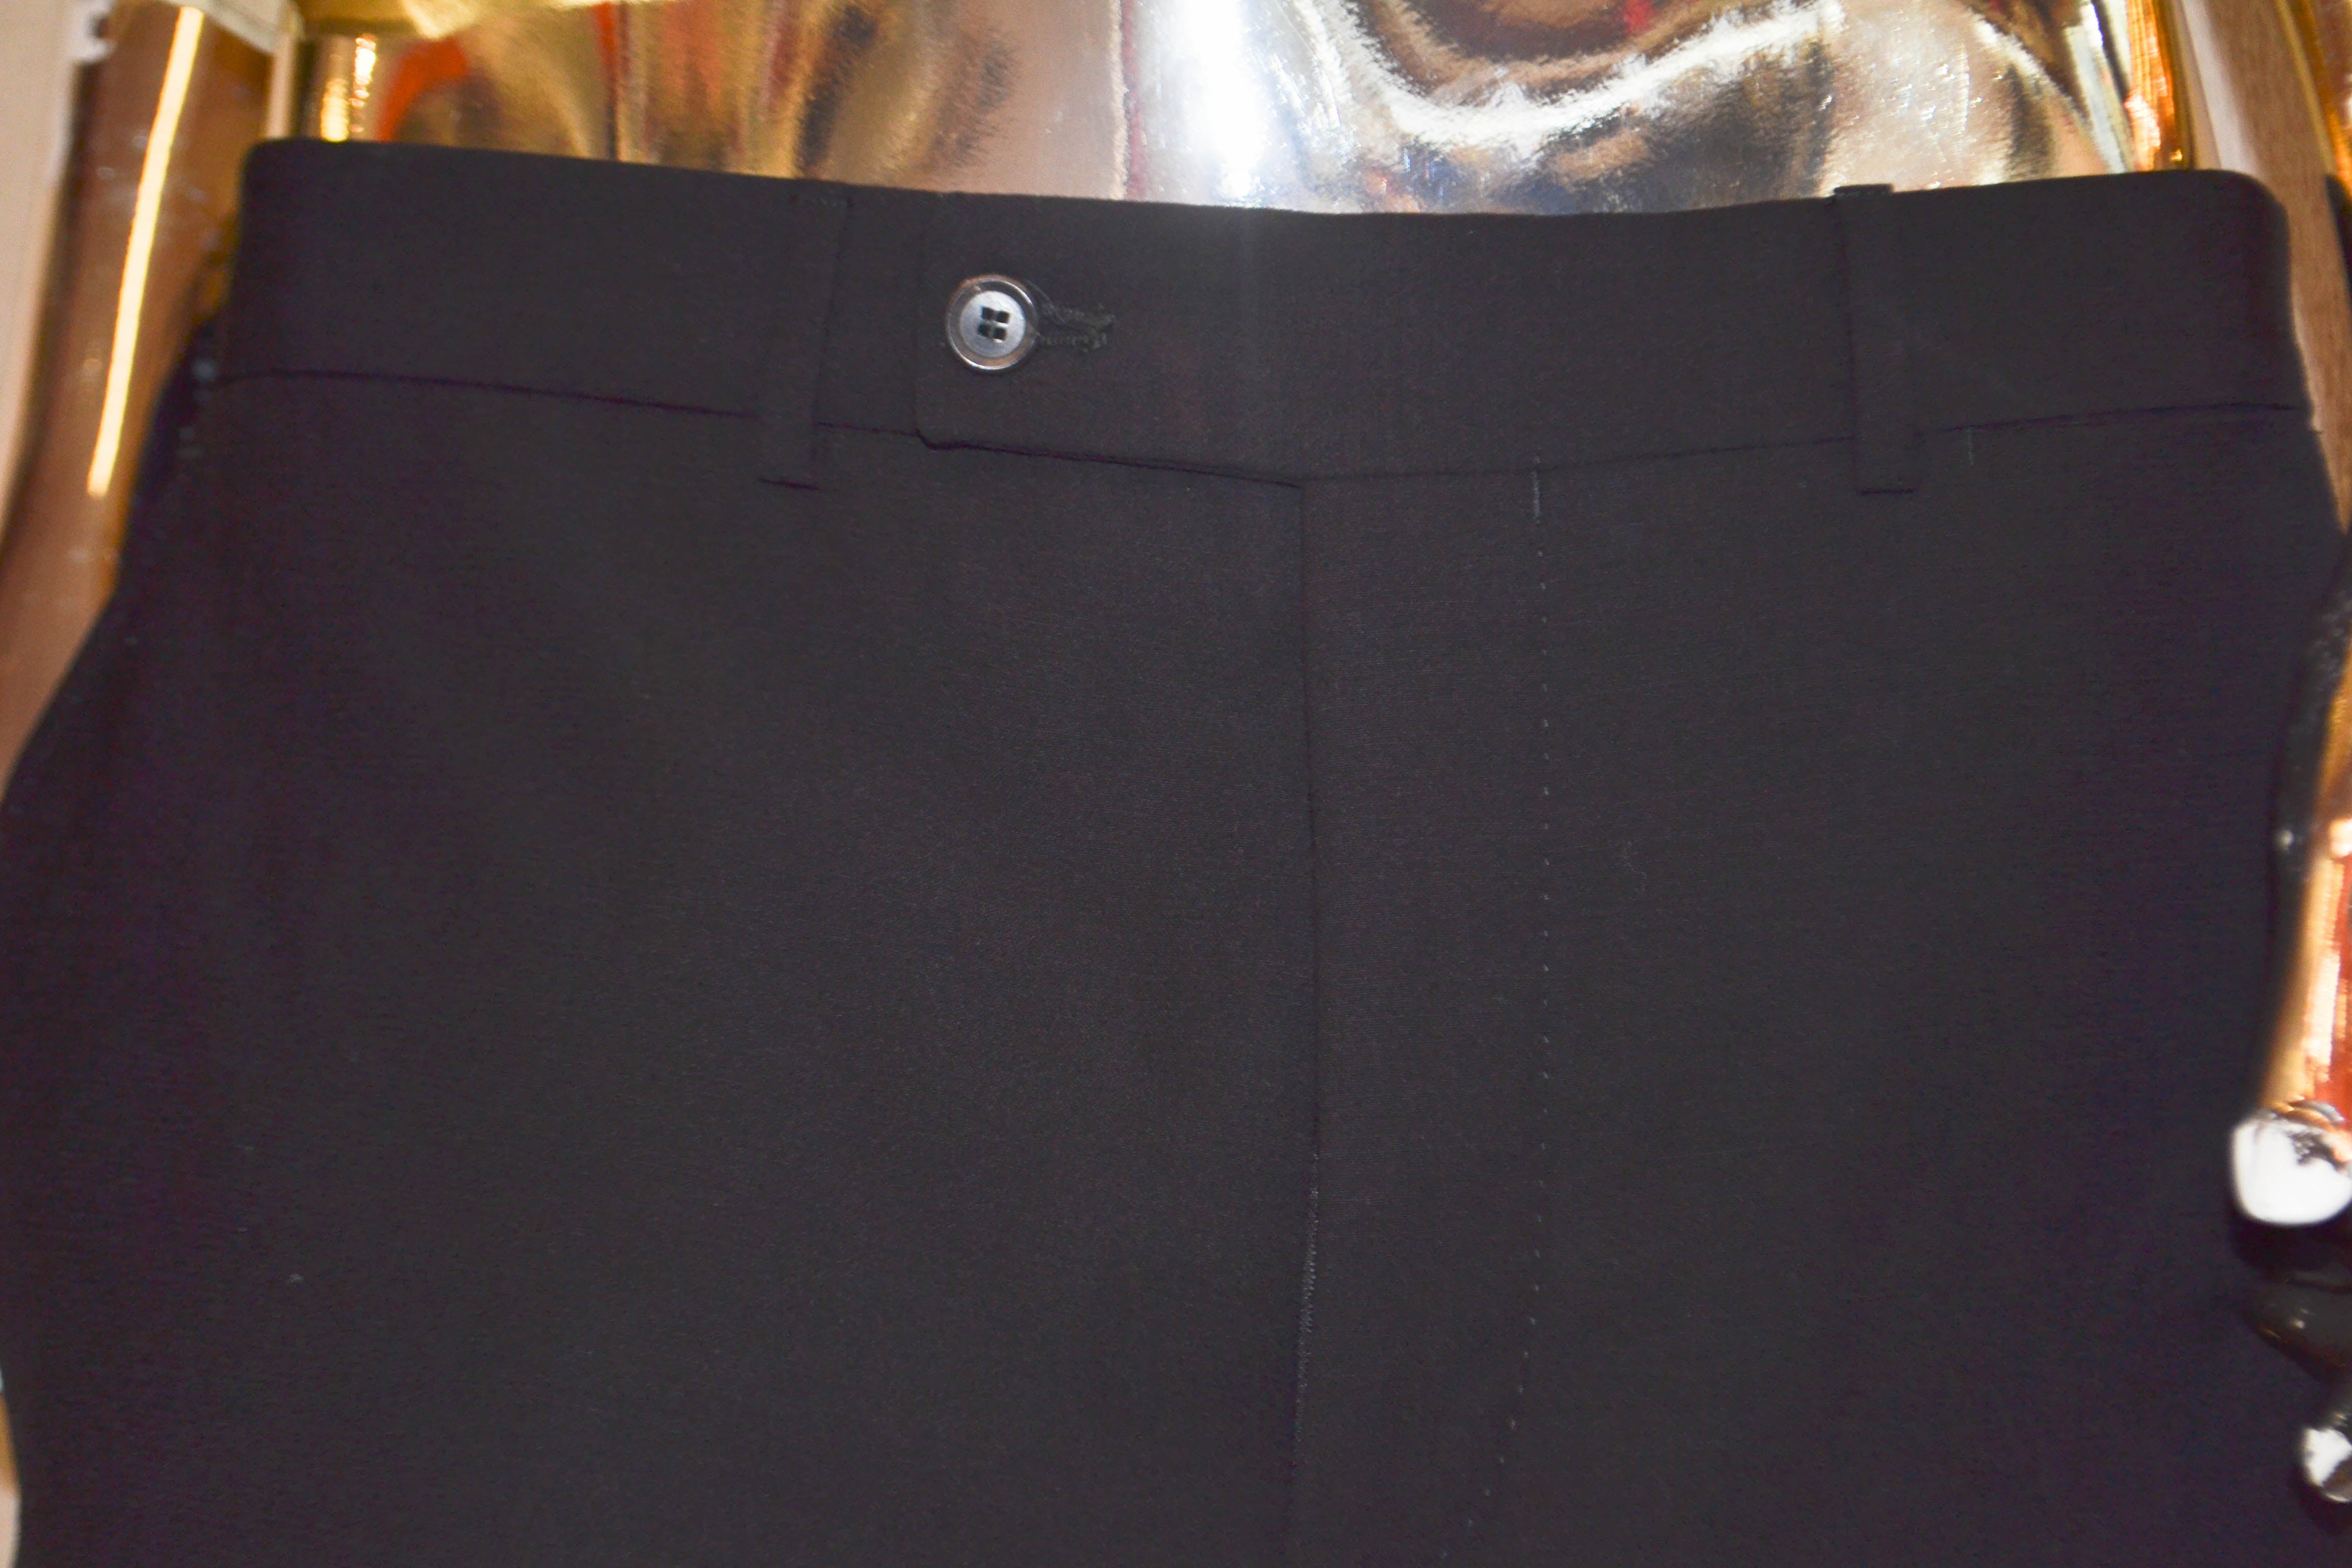 Authentic Louis Vuitton Black Pants